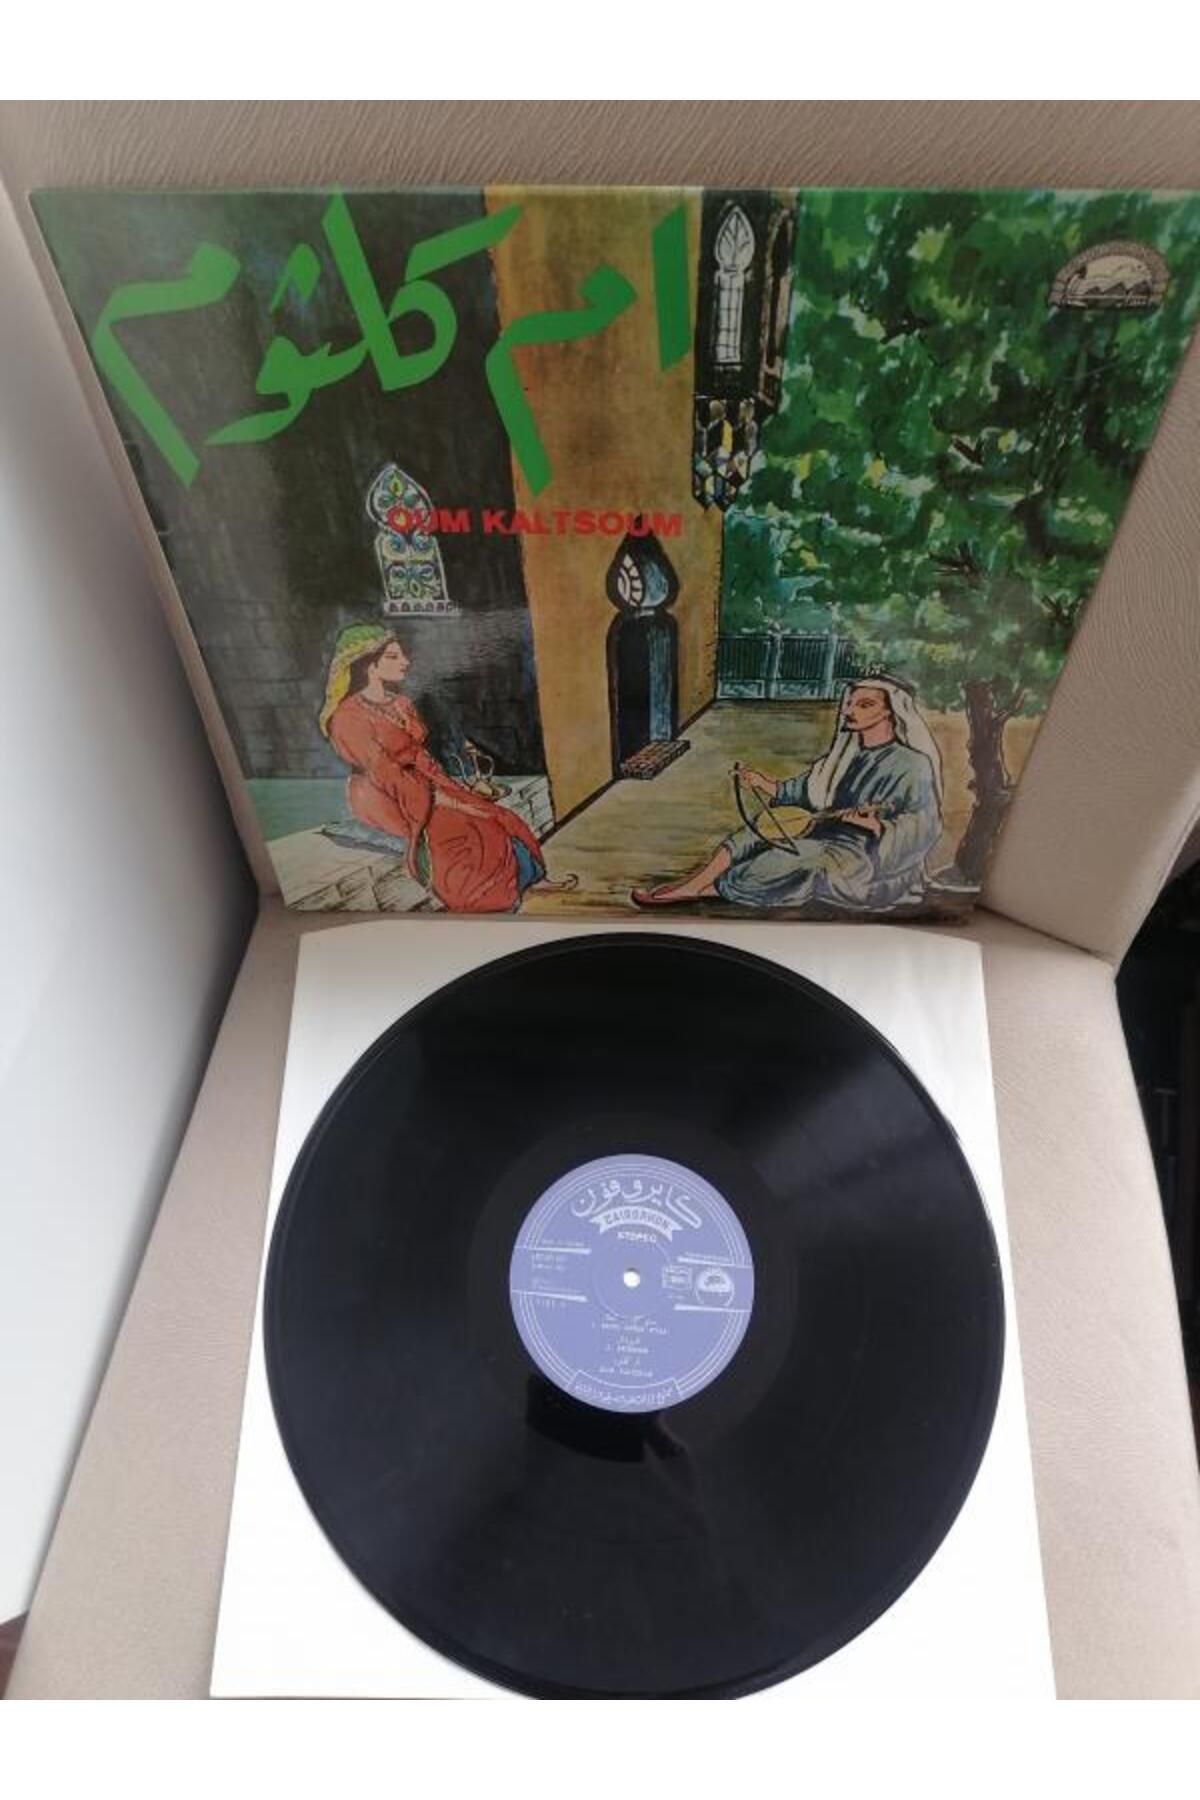 Plakperest Om Kalsoum (Ümmü Gülsüm) - Taş plak Toplamaları - 1975 Yunanistan Basım Albüm - 33 lük LP Plak